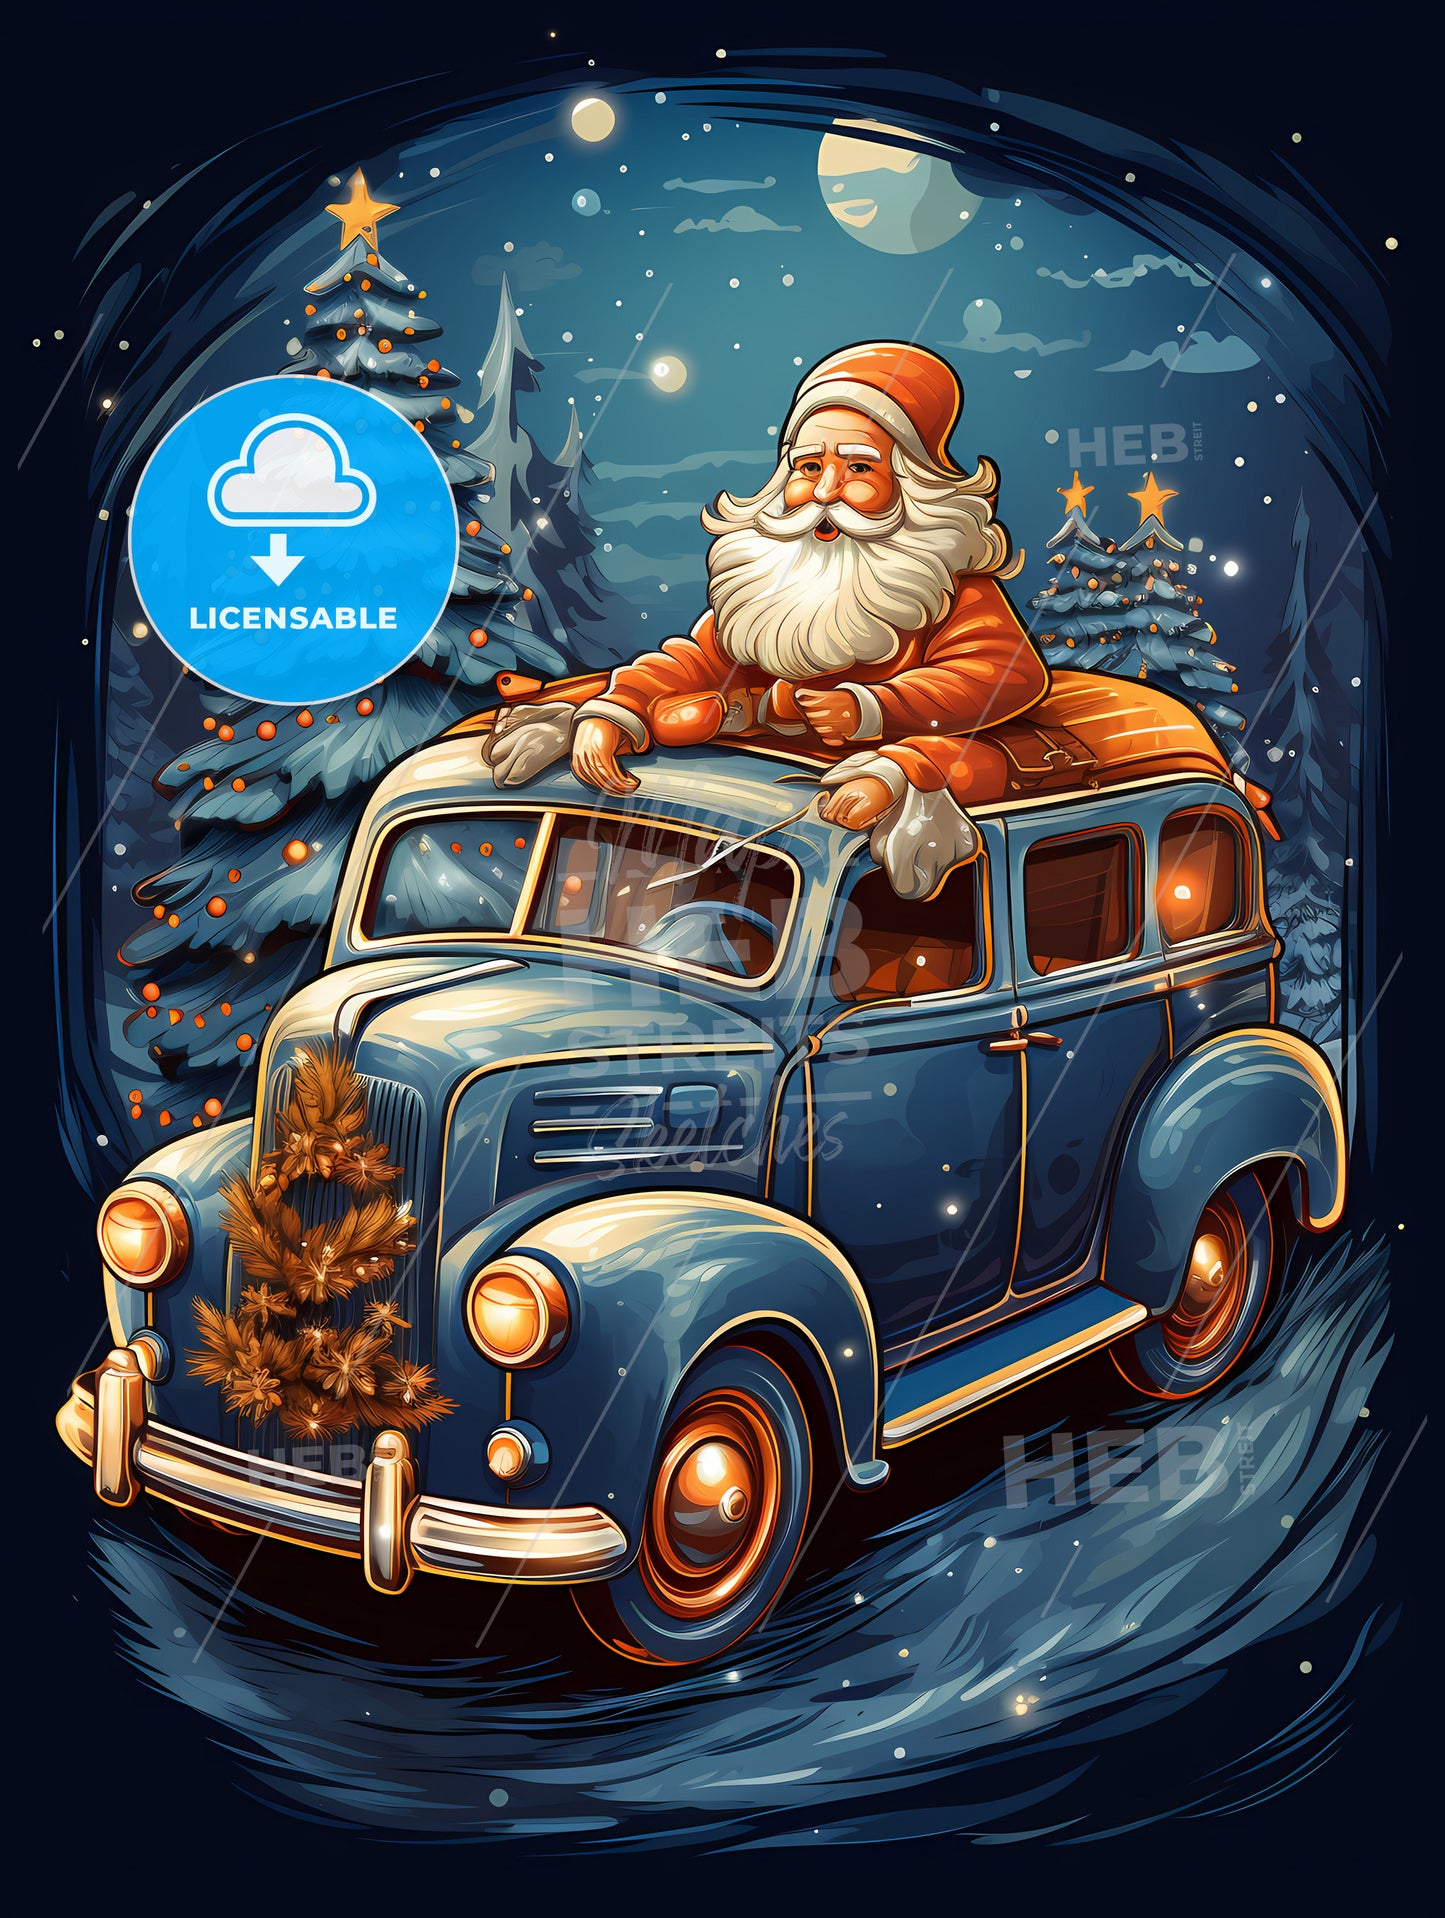 Christmas - A Cartoon Of Santa Claus On A Car